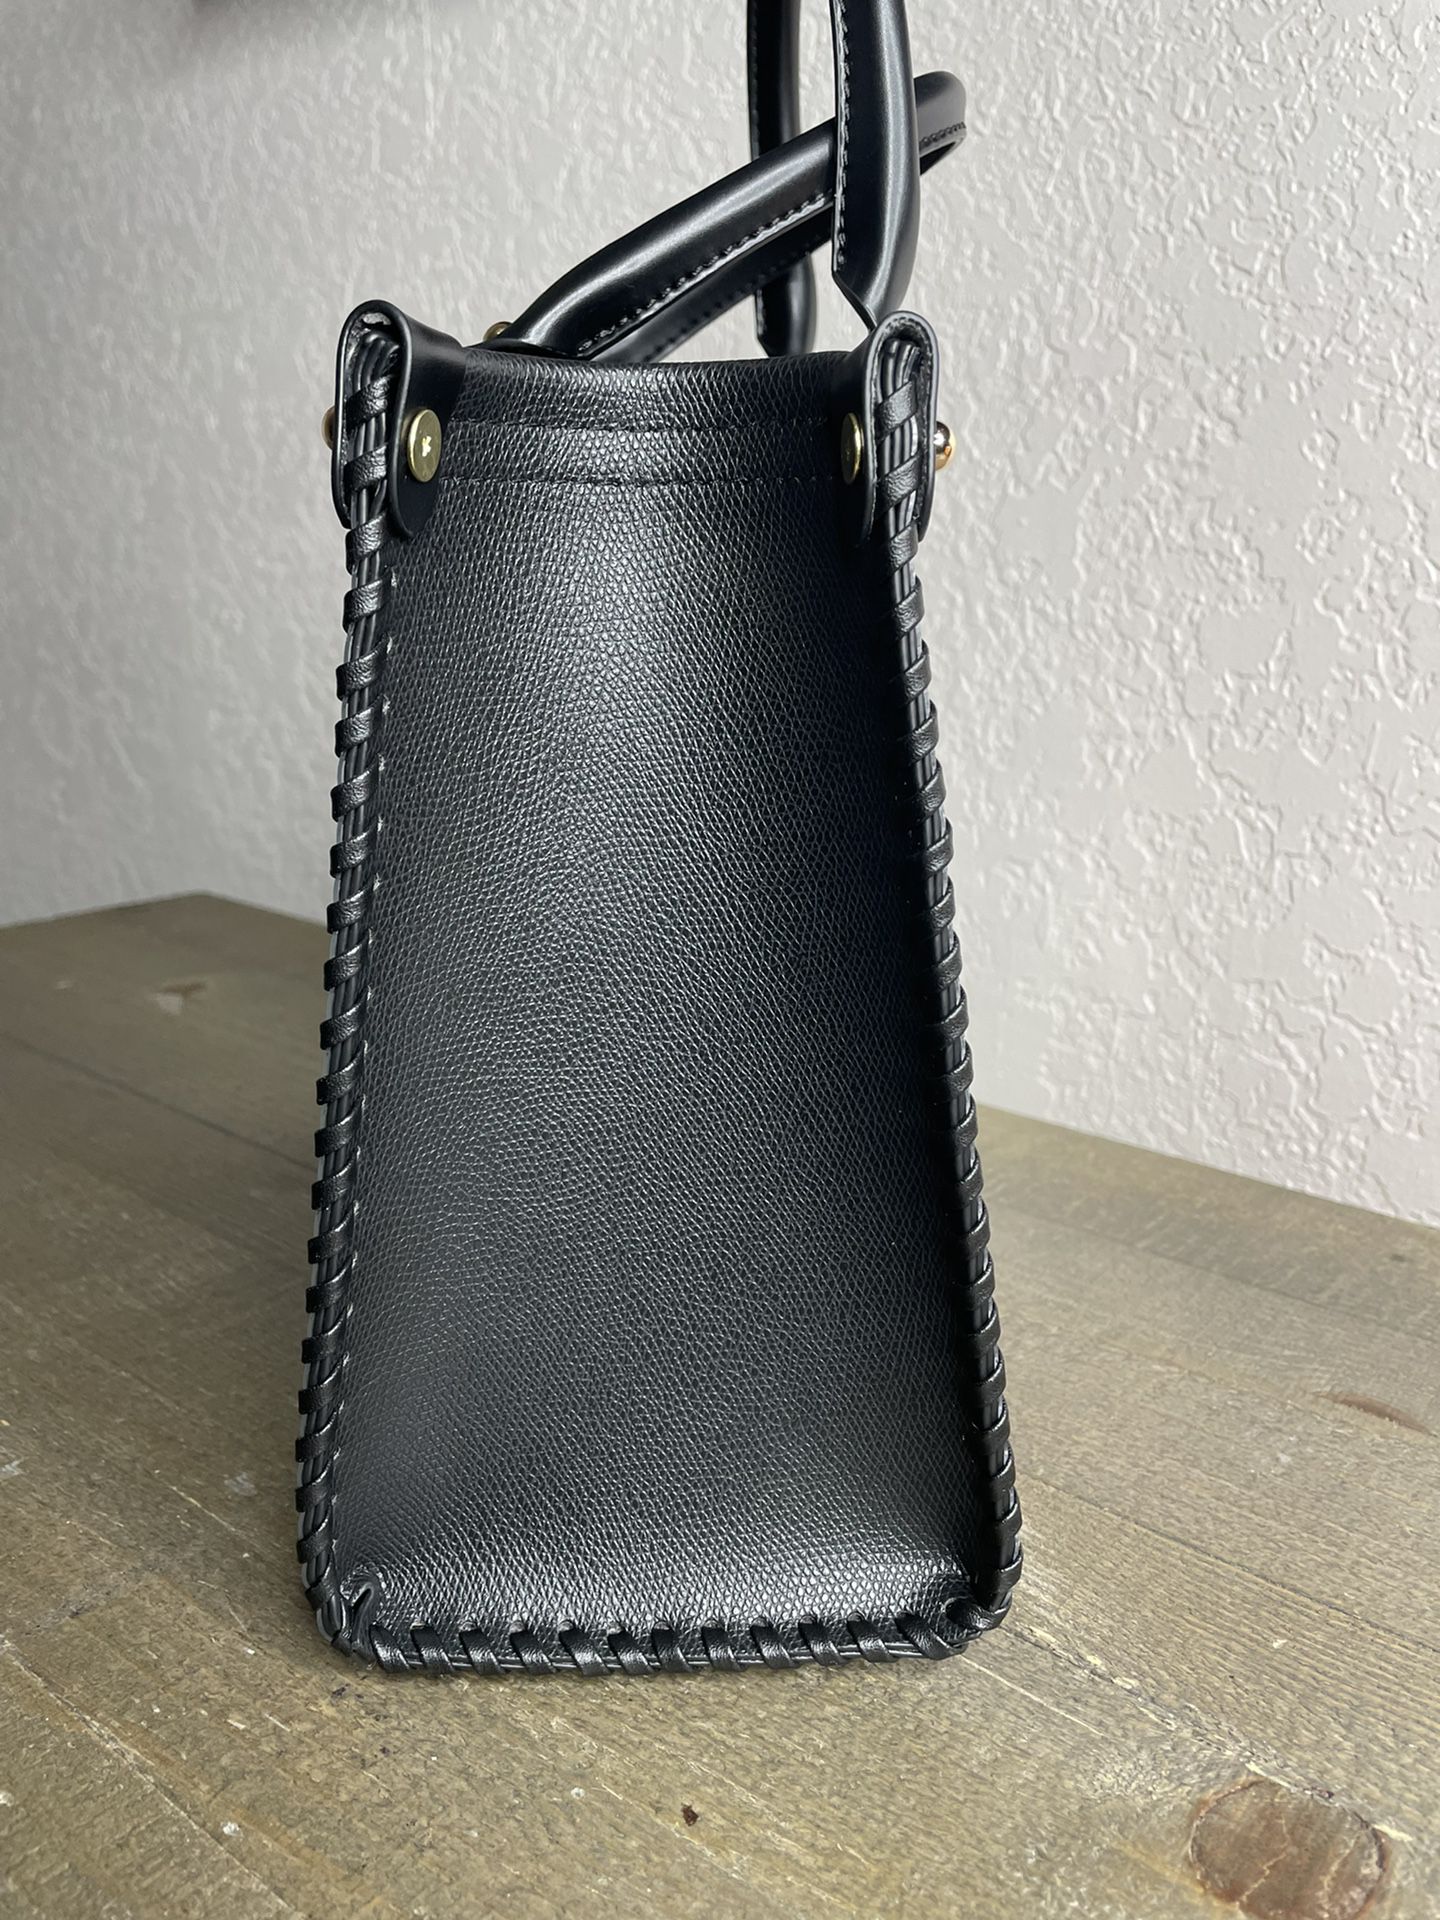 Samara Vegan Leather Shoulder Bag for Sale in San Diego, CA - OfferUp